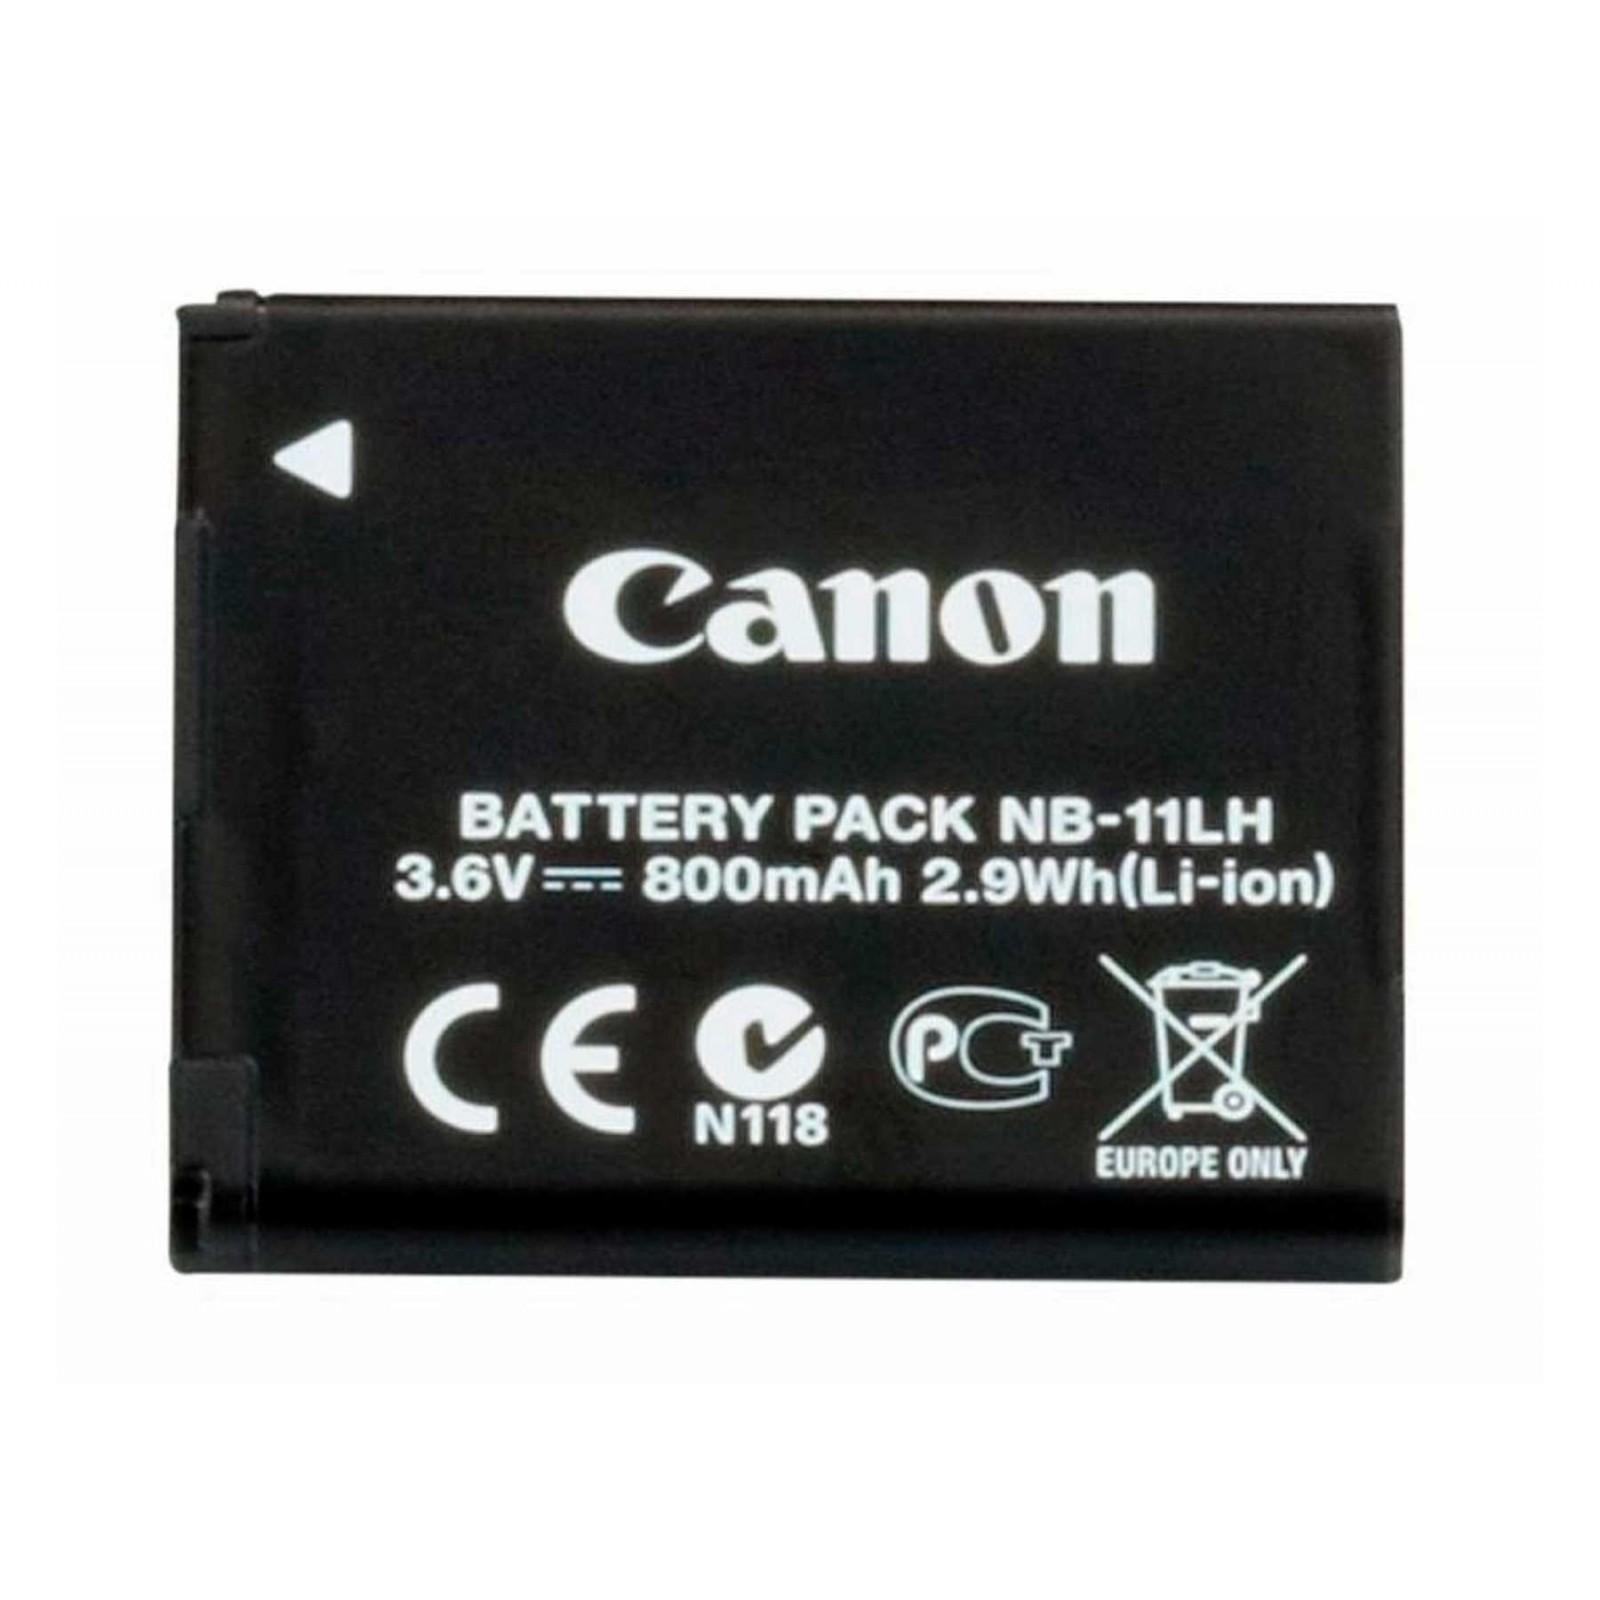 Canon Nb-11L 800Mah 3.6V / Batería Recargable Para Cámara Co